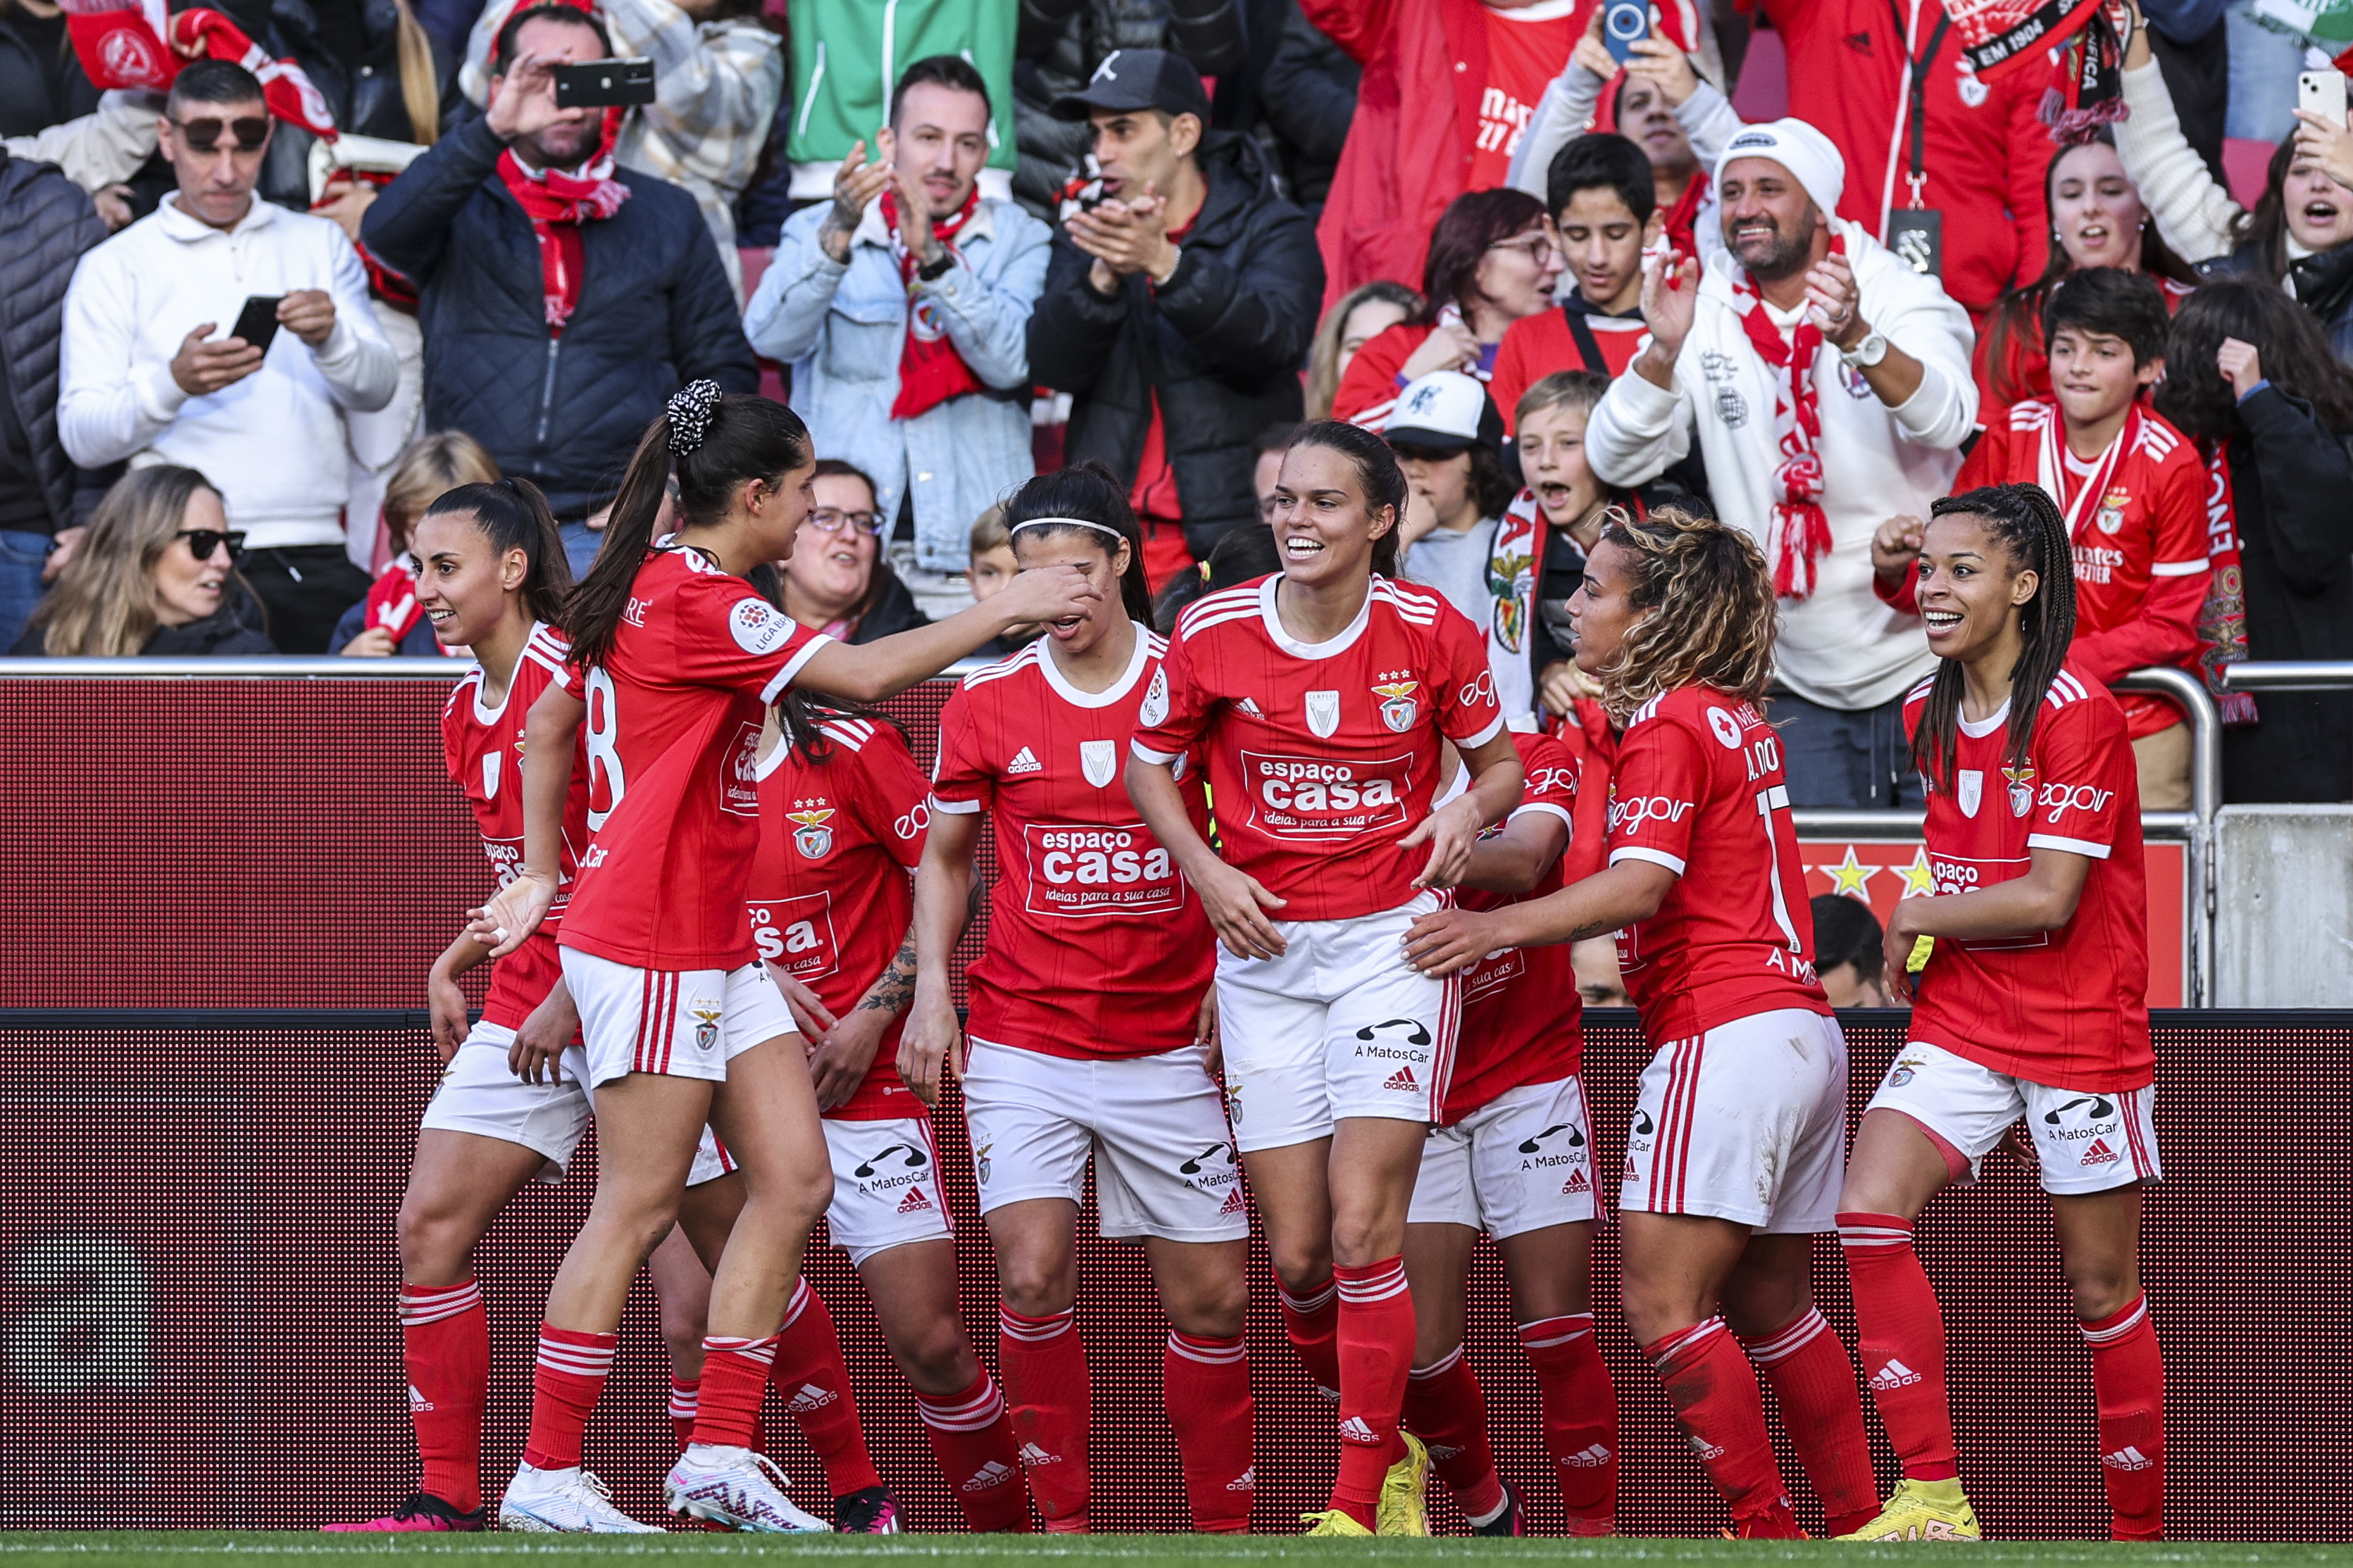 O Benfica goleou o Sporting e há mais um número histórico para o futebol  feminino em Portugal: 15.032